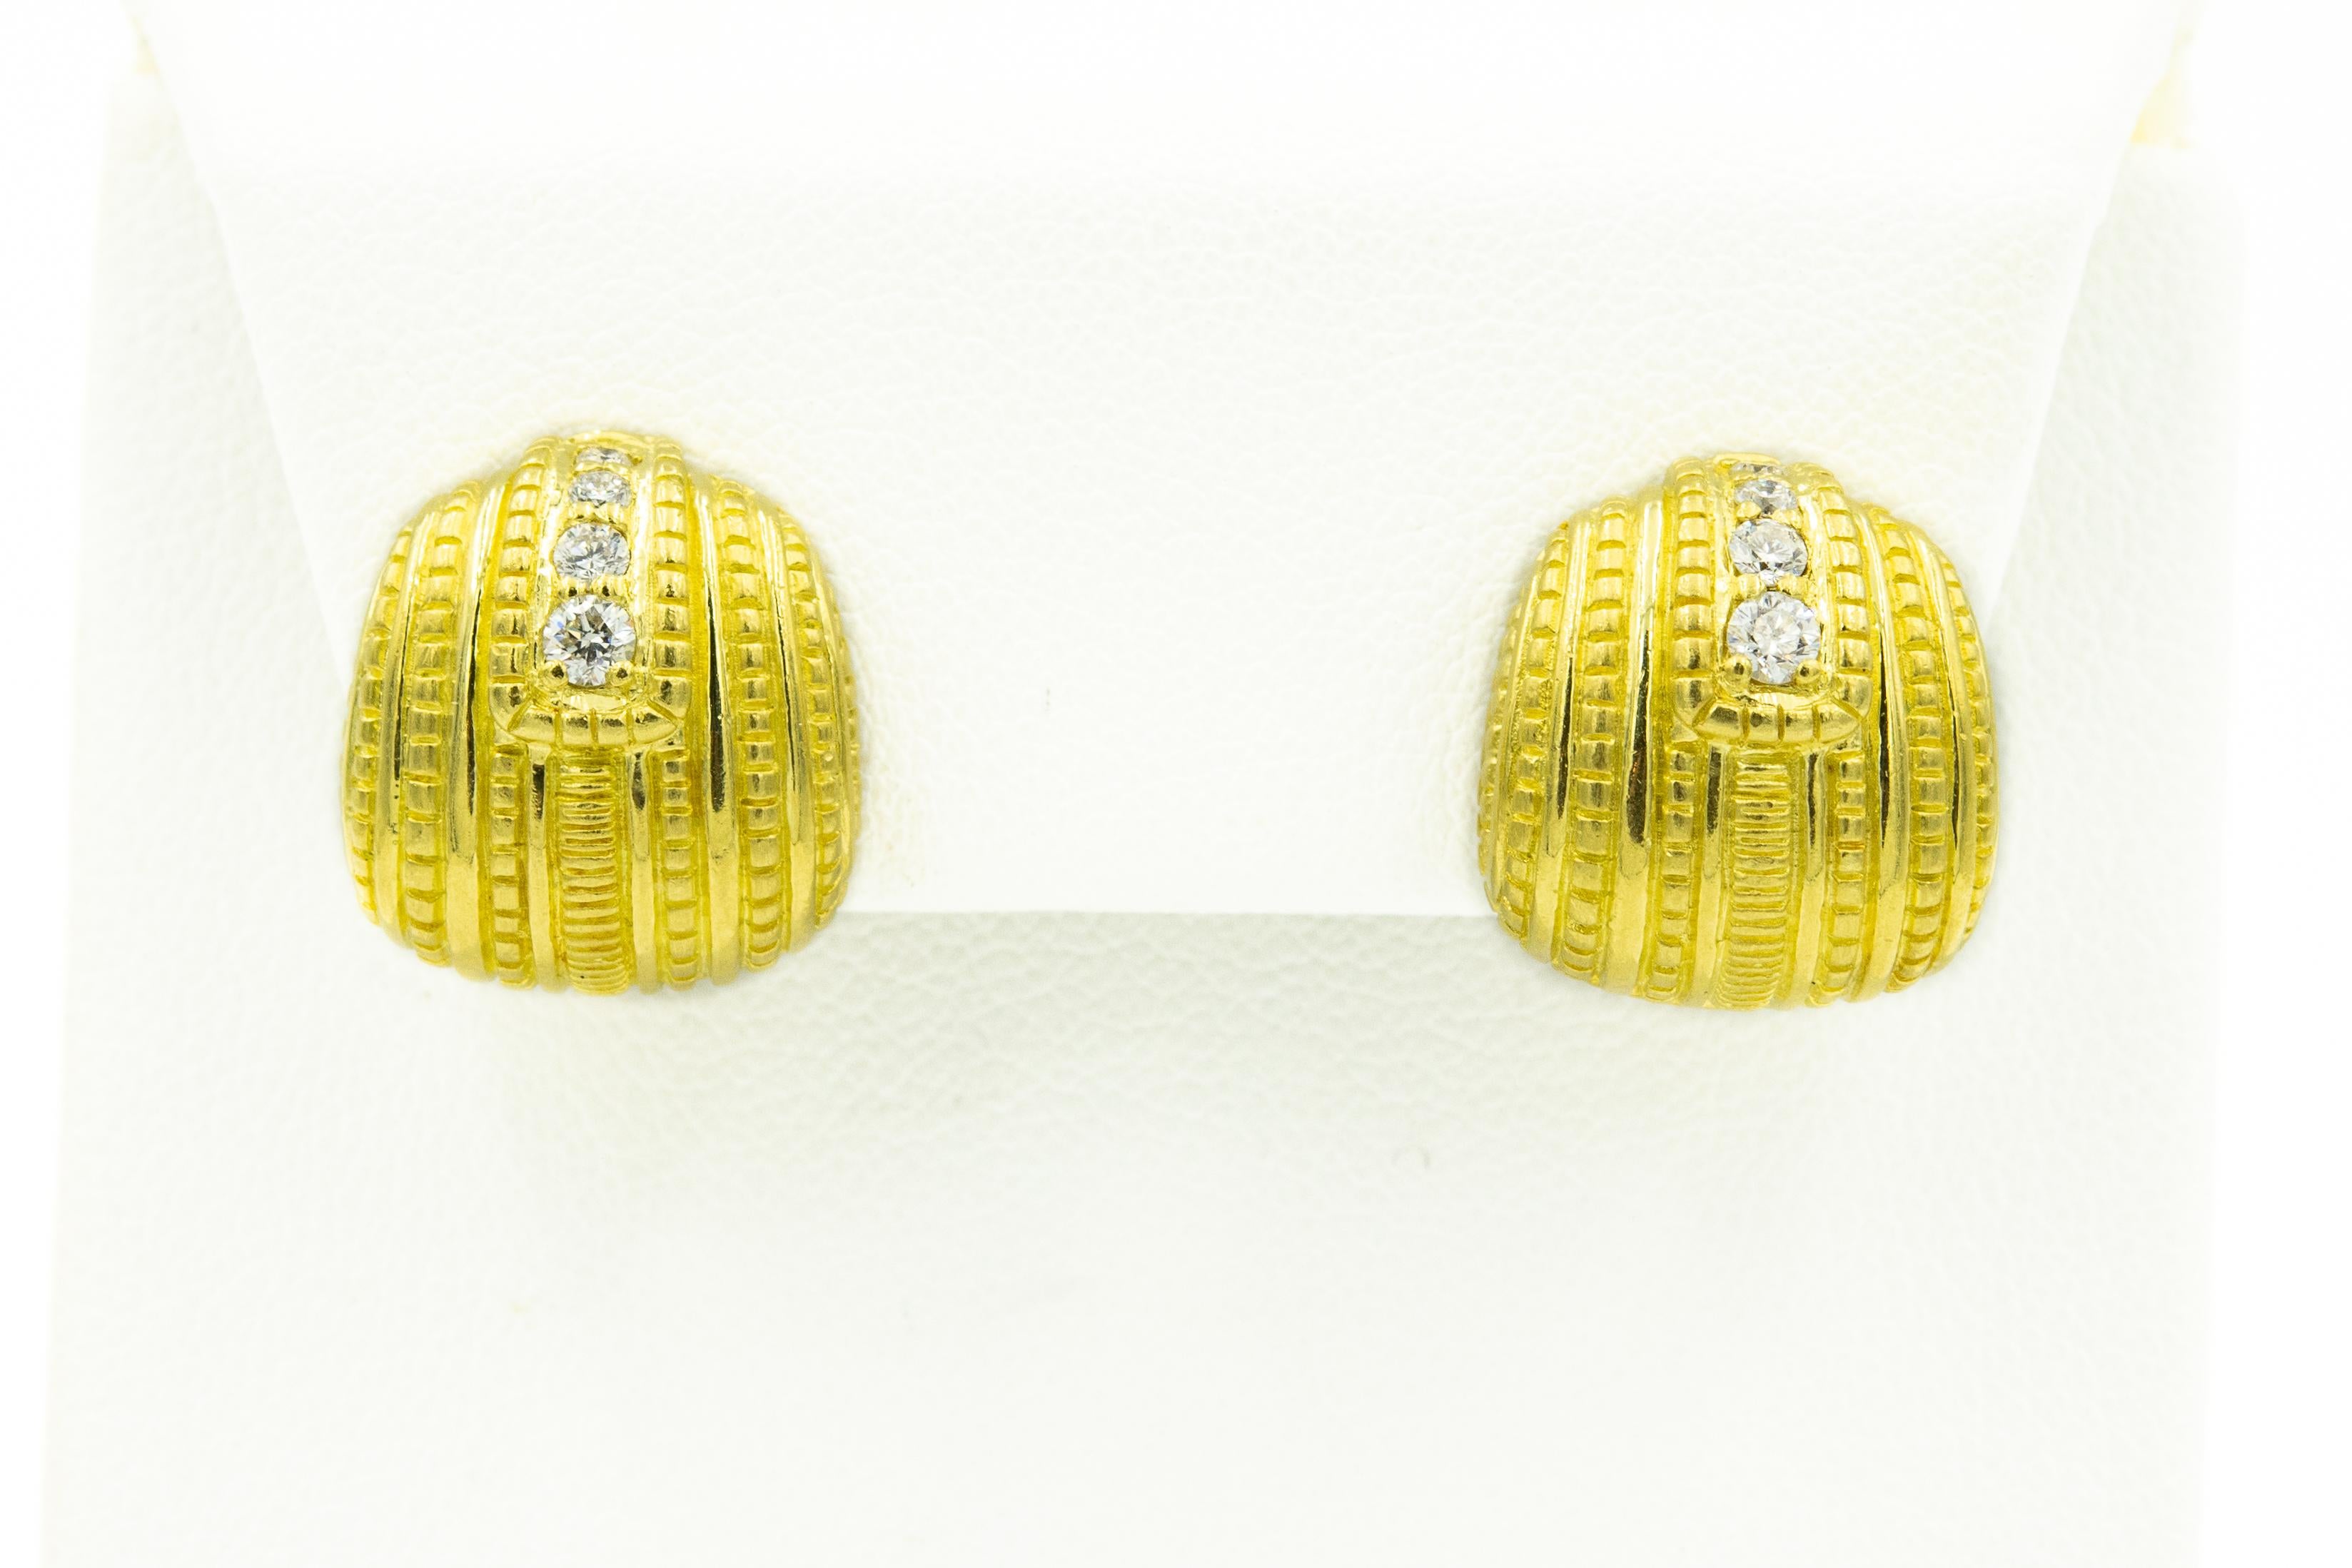 judith Ripka-Ohrstecker aus 18 Karat Gelbgold mit 4 abgestuften runden Brillanten, die jeden Ohrring akzentuieren, und Hebelverschlüssen.

Markiert 18k JR und gestempelt.
